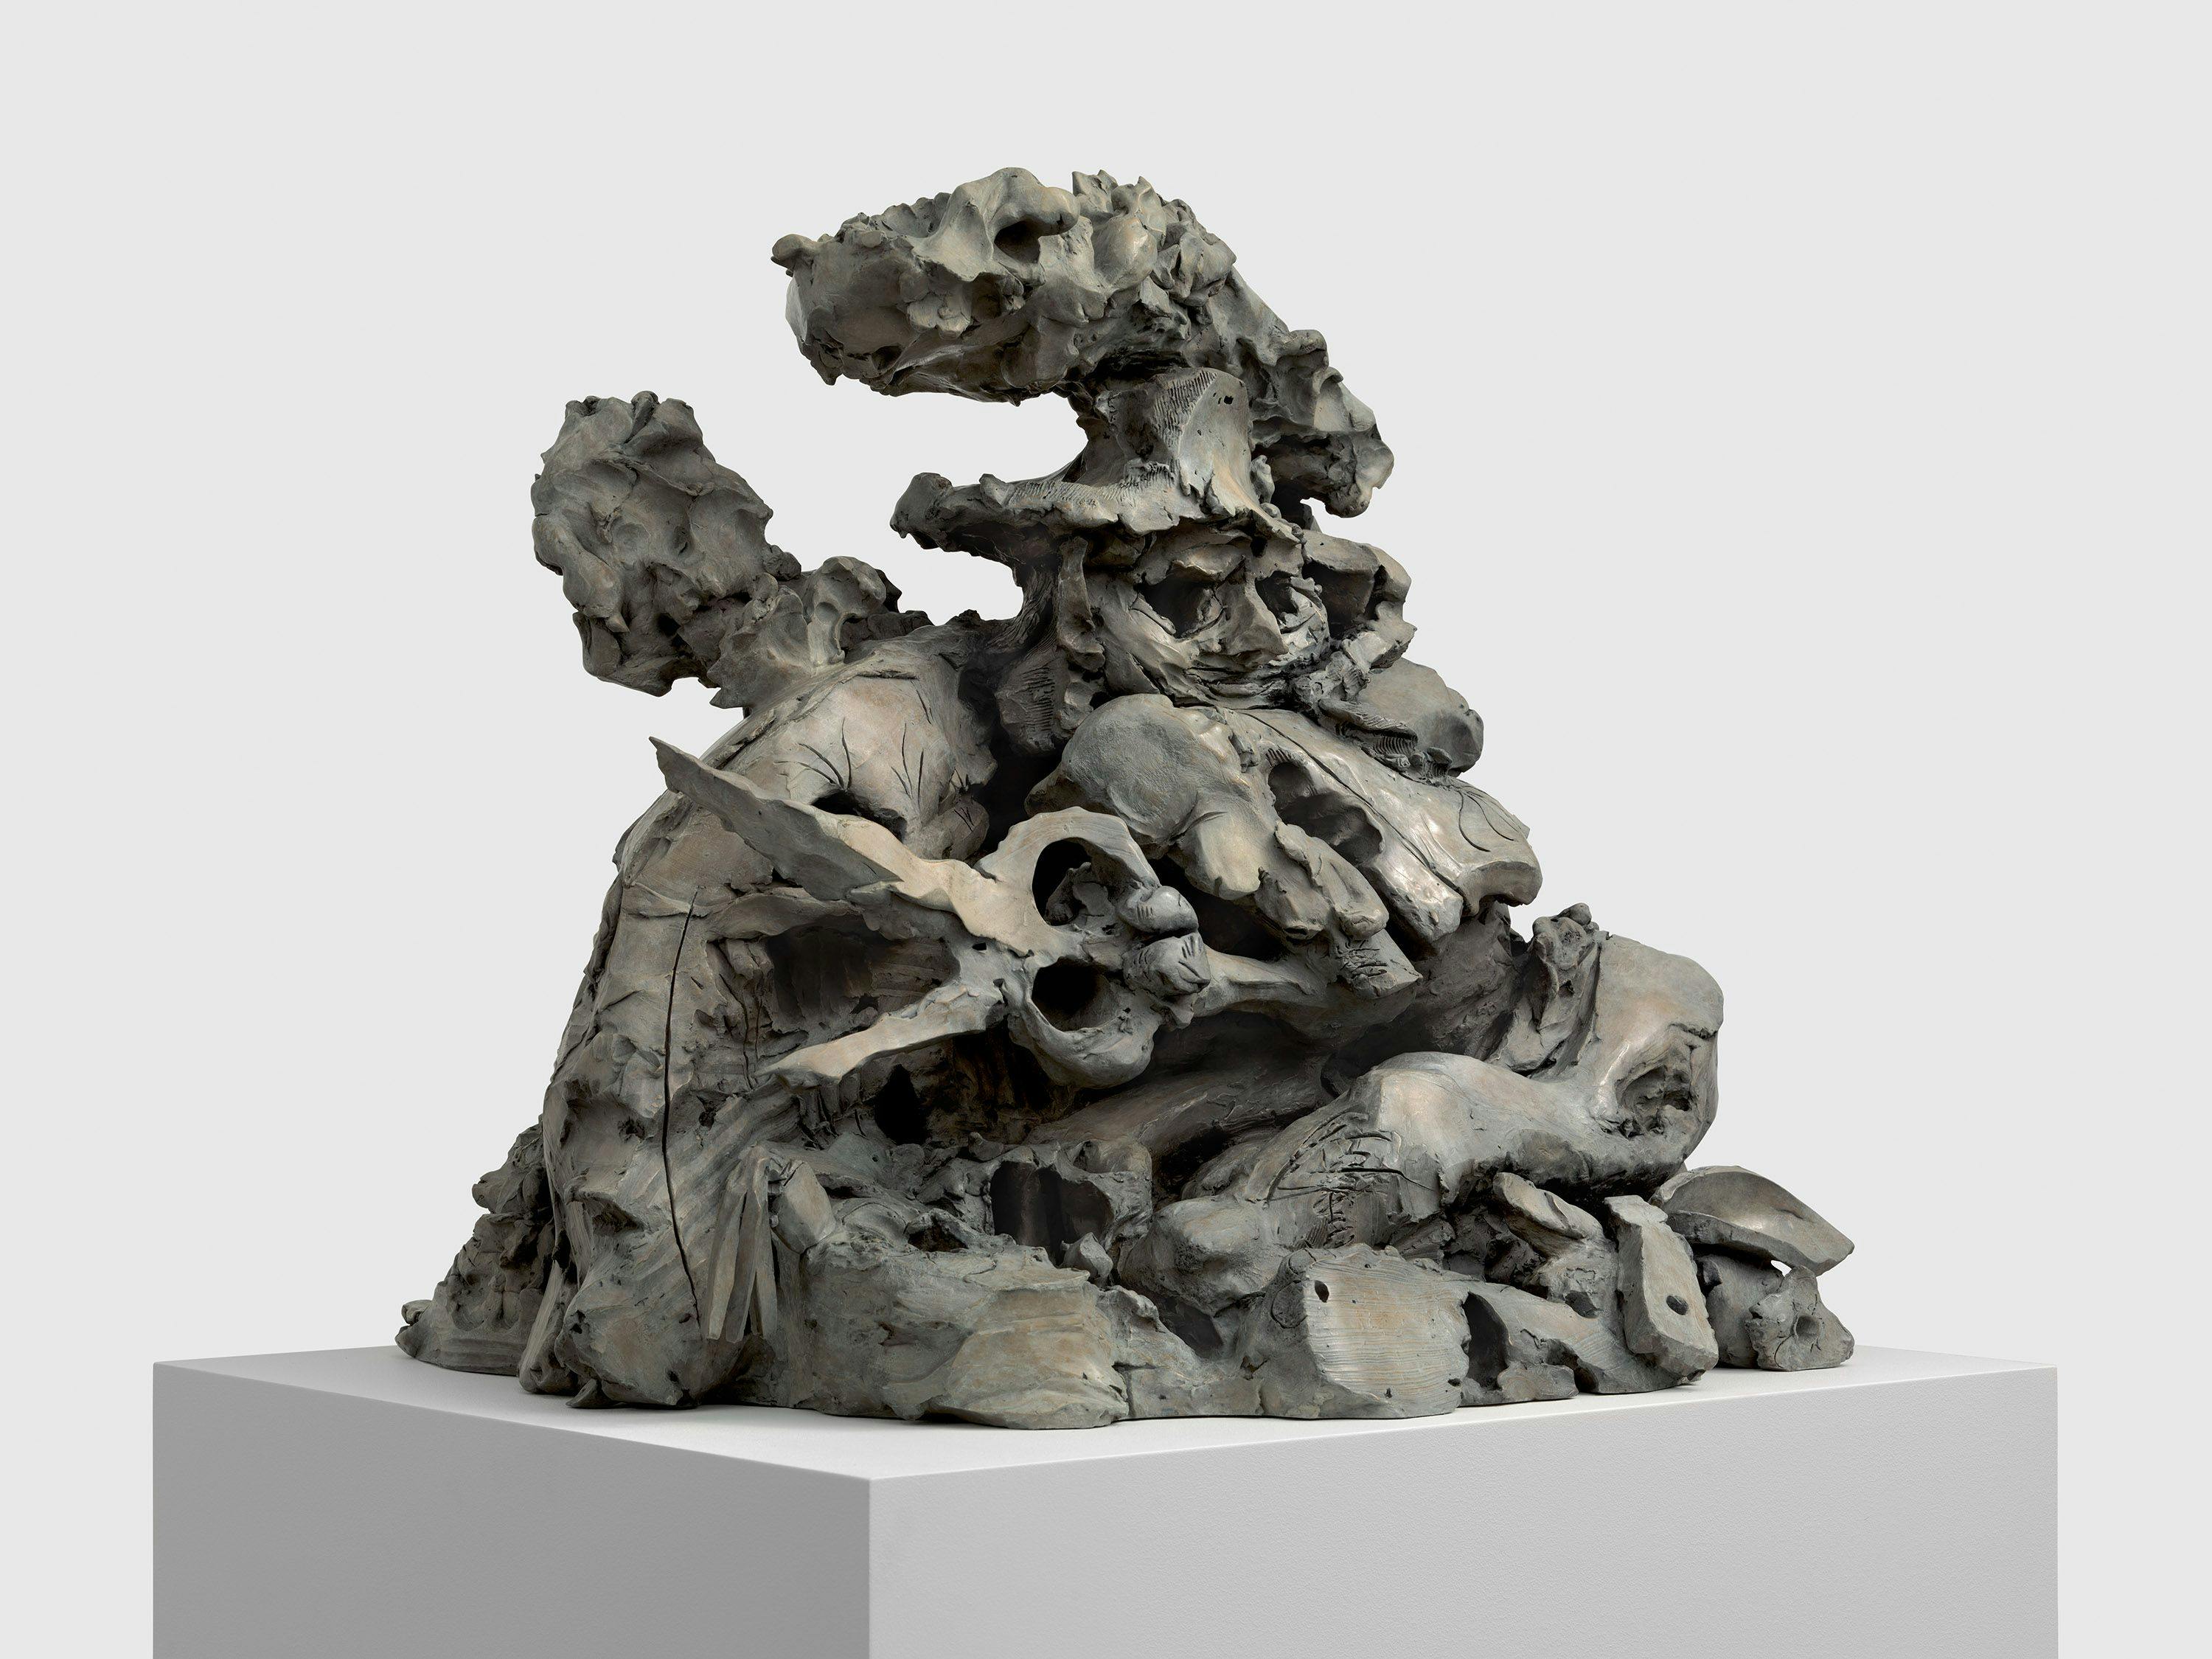 A sculpture by Dana Schutz, titled The Gardener, dated 2021.